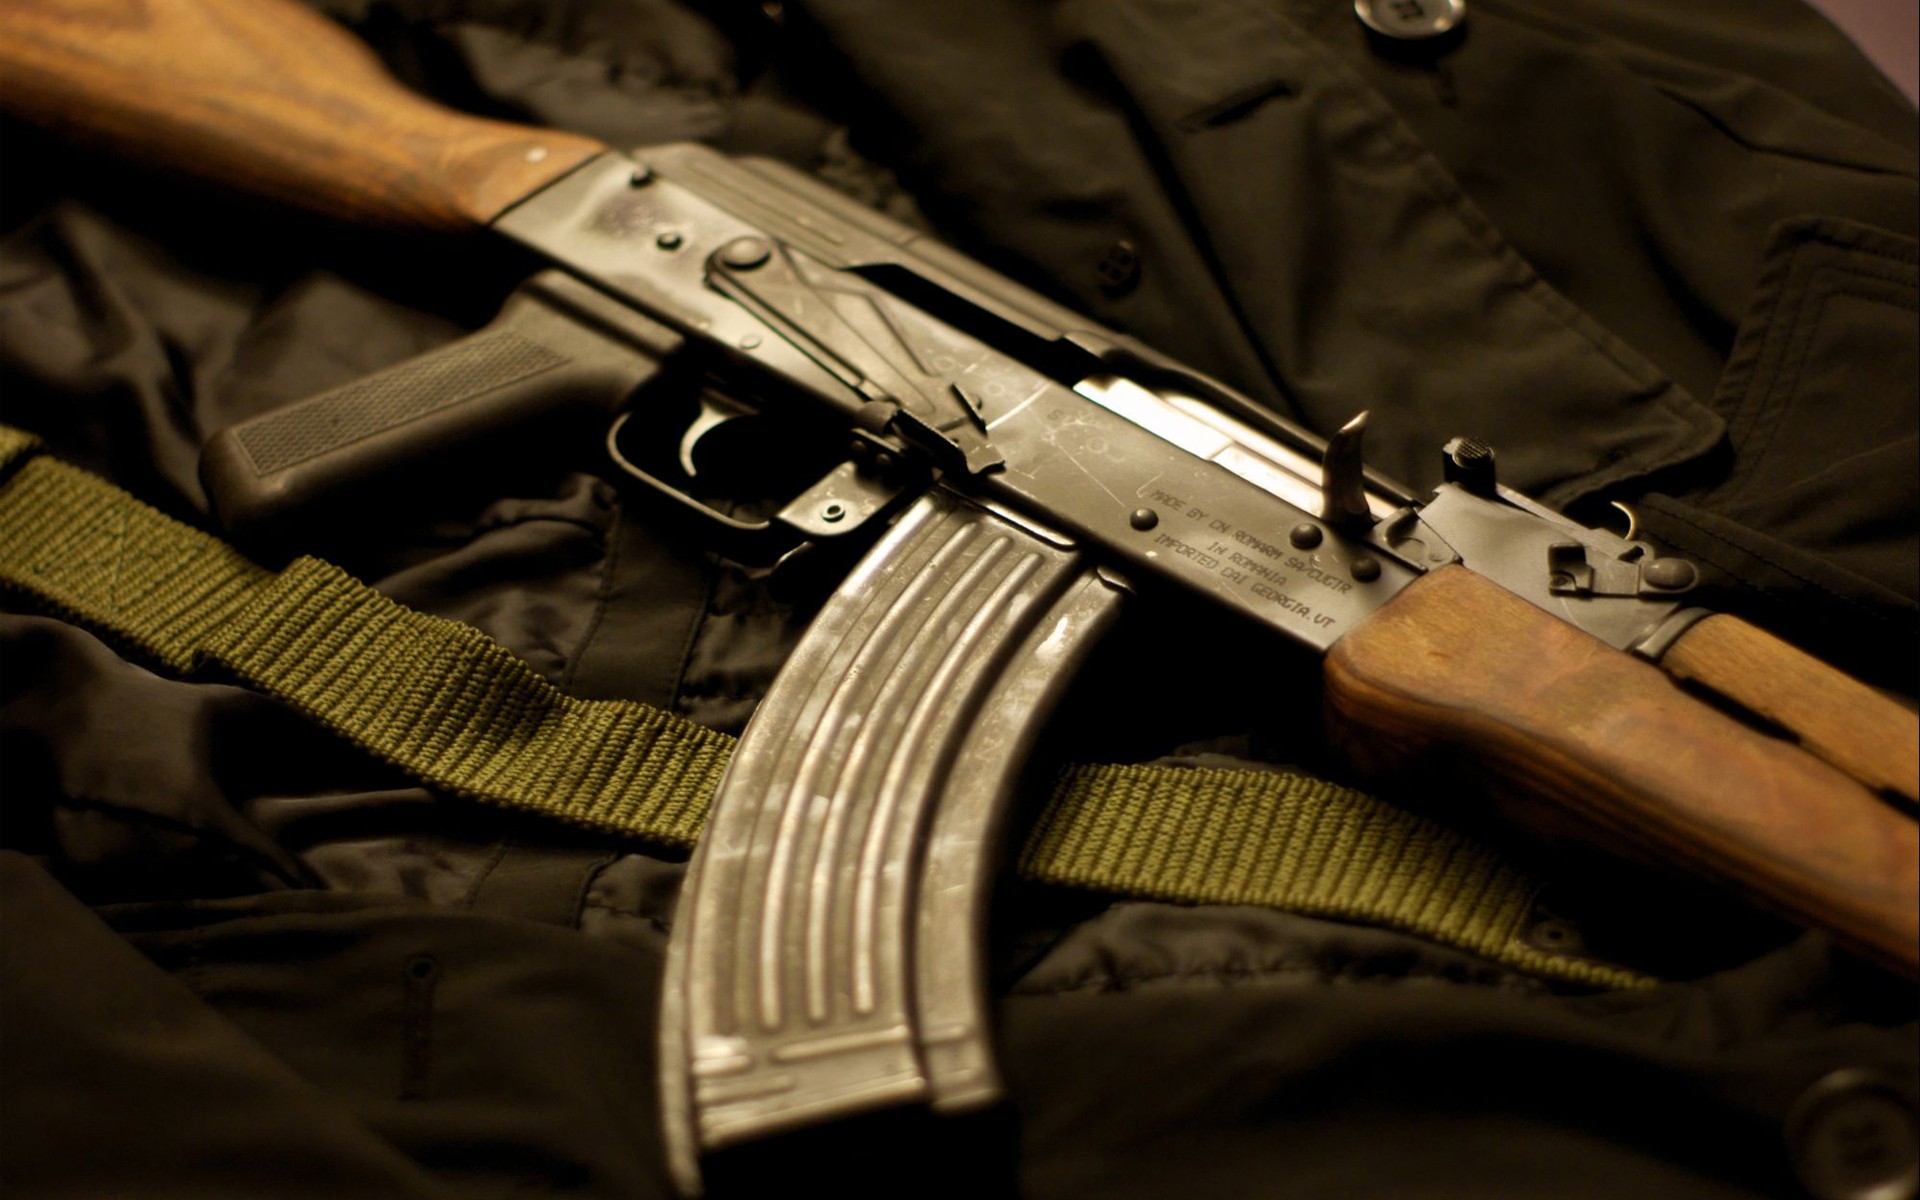 General 1920x1200 AKM closeup weapon AK-47 assault rifle Russian/Soviet firearms